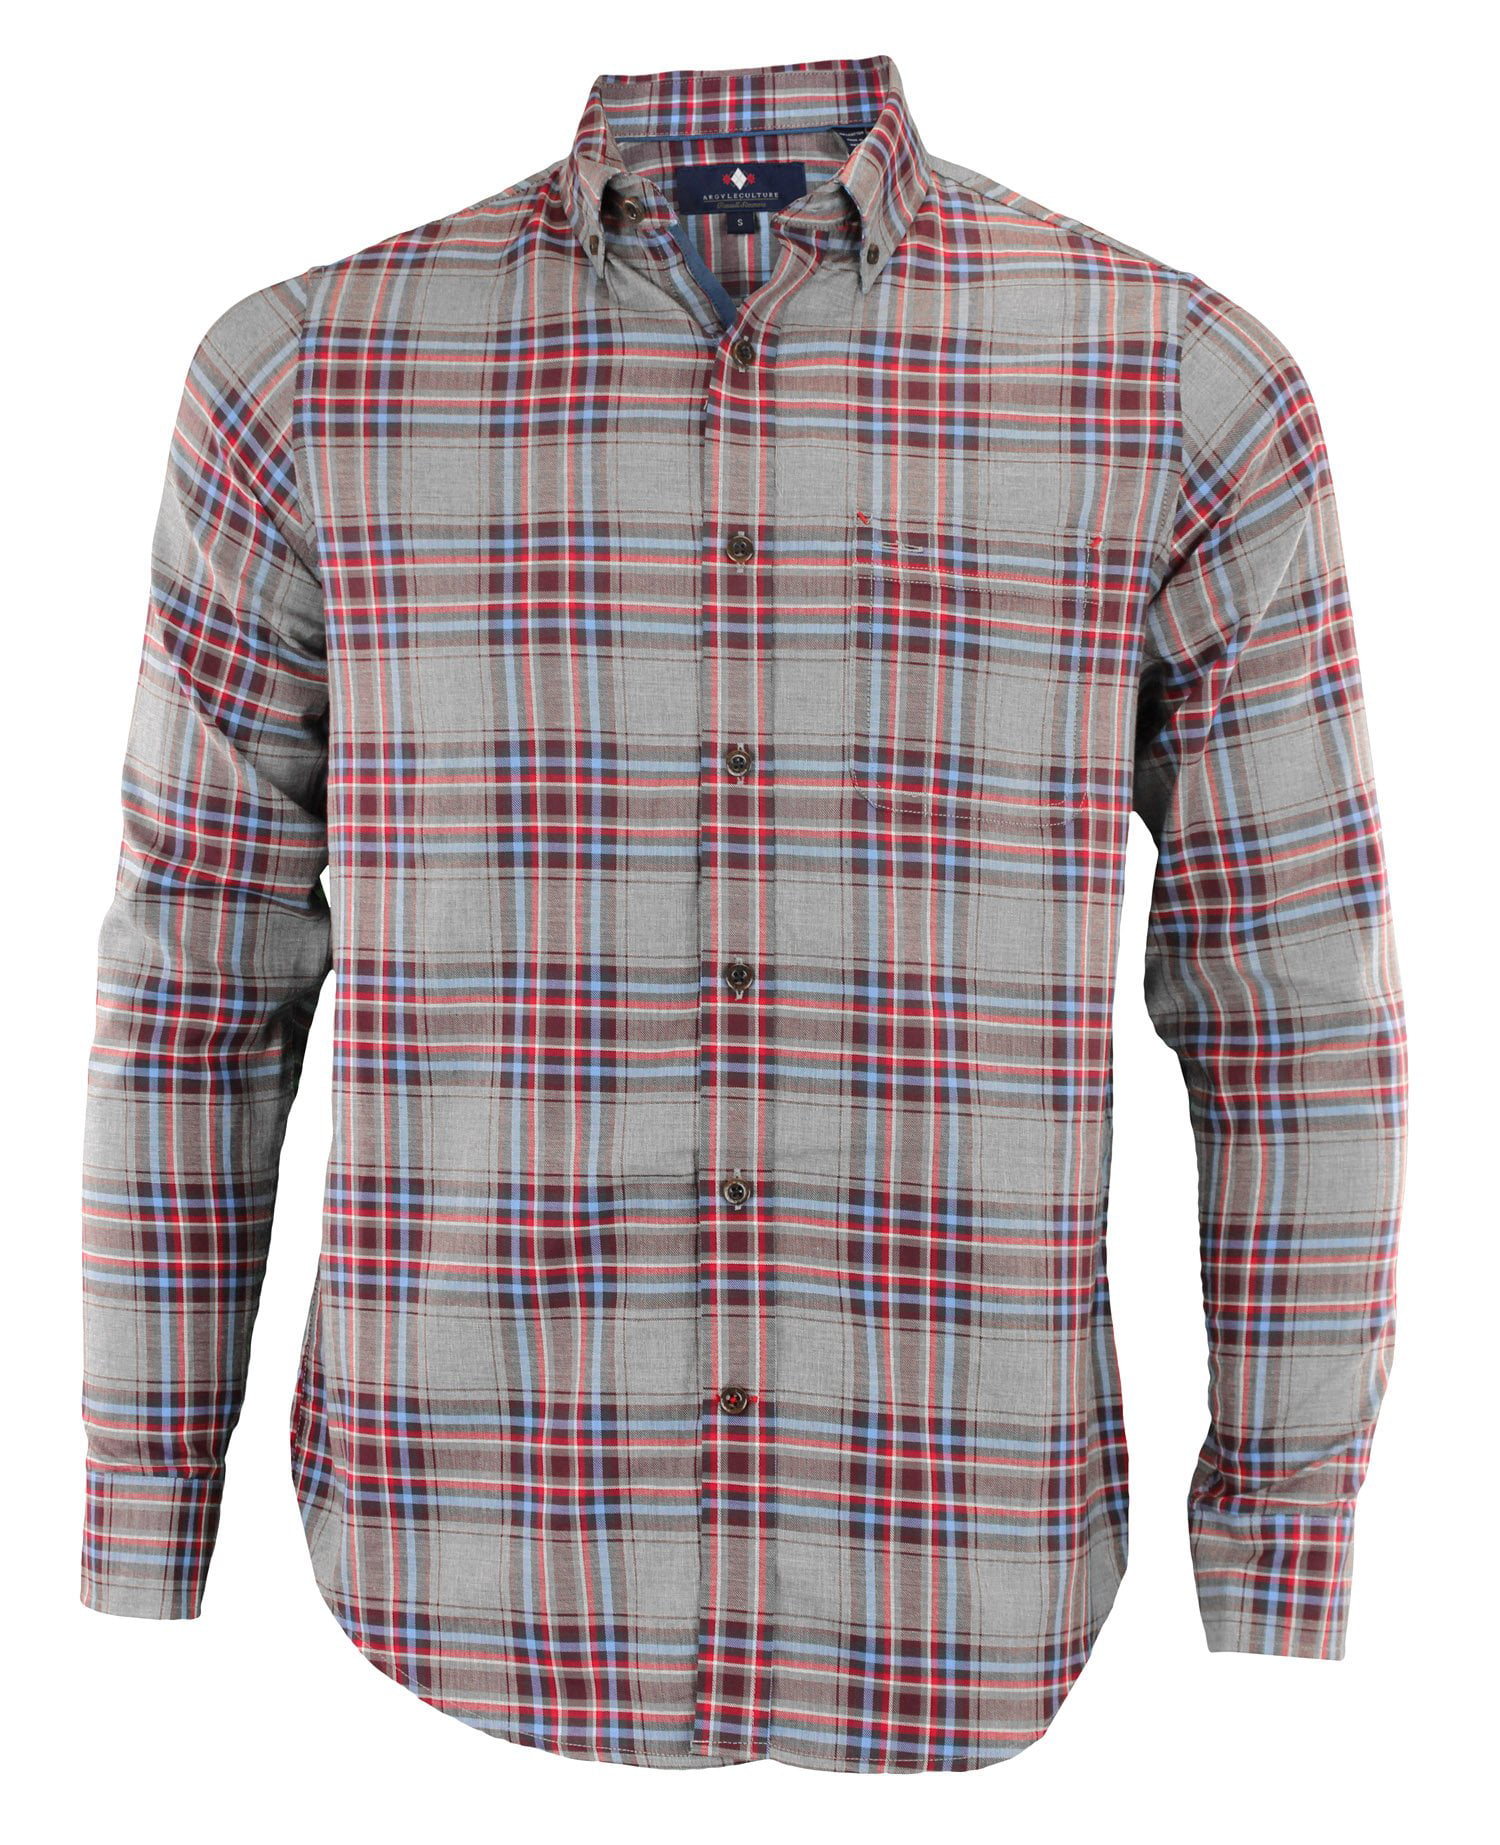 Argyle Culture Men's Button Up Plaid Shirt, Diamond - Walmart.com